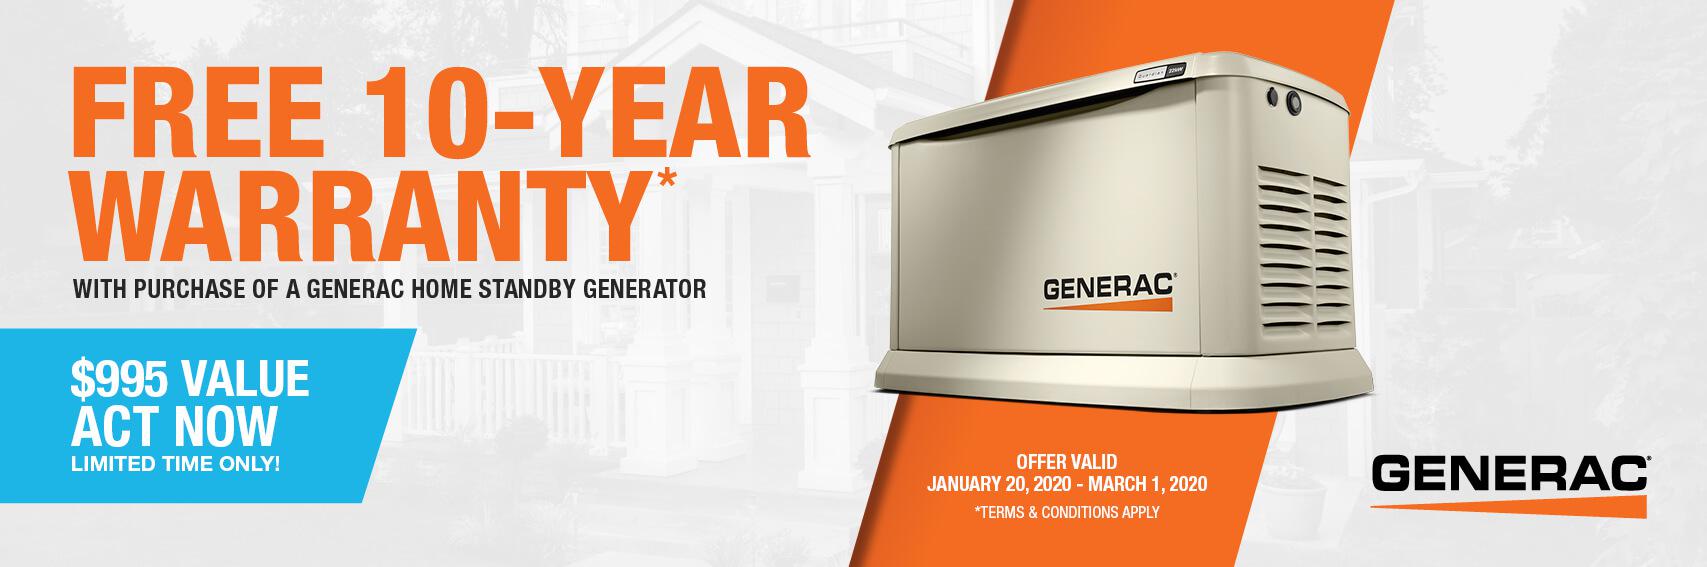 Homestandby Generator Deal | Warranty Offer | Generac Dealer | Lee, MA